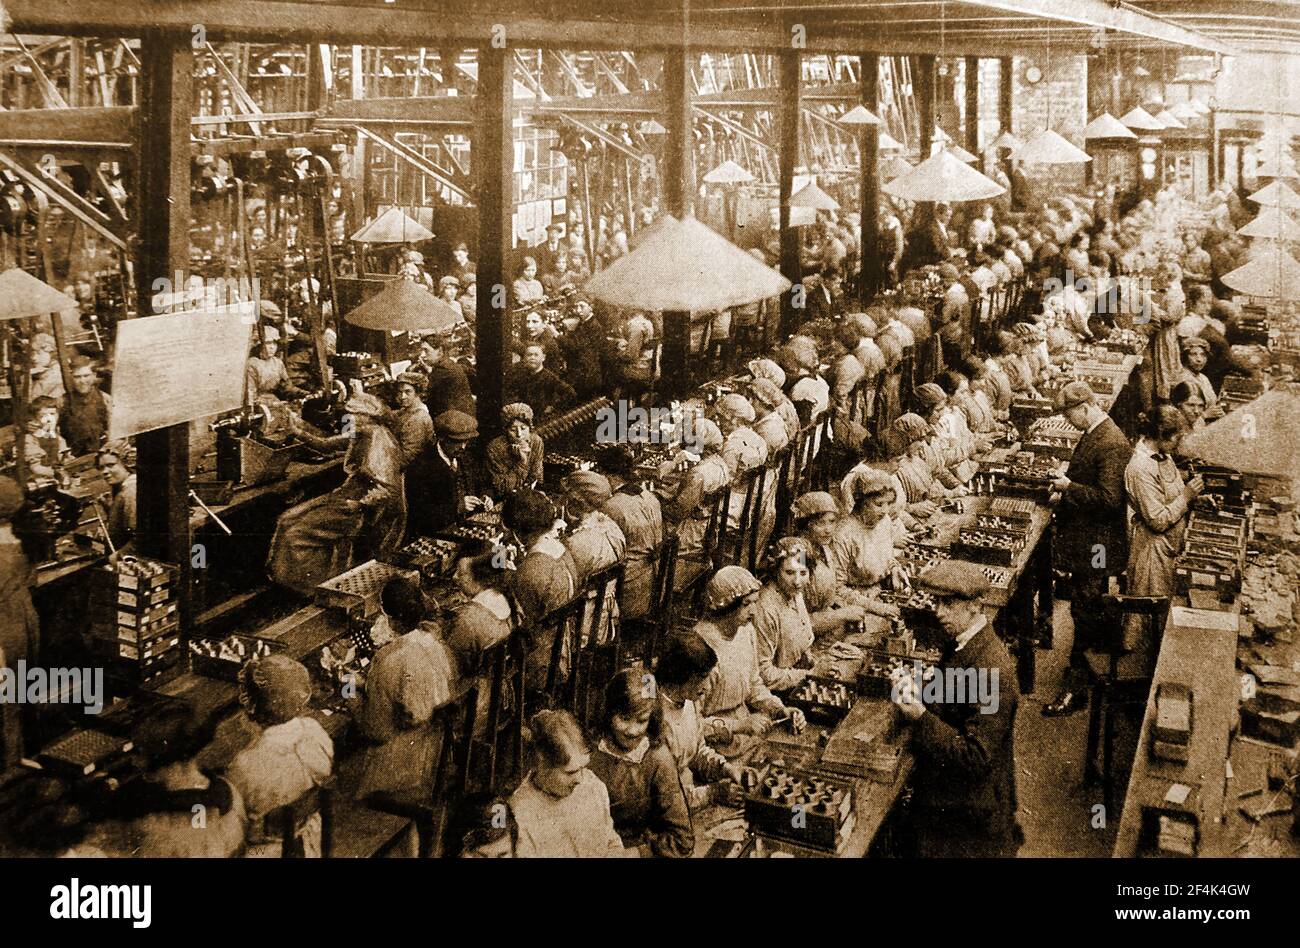 Ein altes Foto, das während des Ersten Weltkrieges aufgenommen wurde und hauptsächlich Frauen und junge Arbeiter zeigt, die Schalensicherungen in einer britischen Munitionsfabrik zusammenbauen. Stockfoto